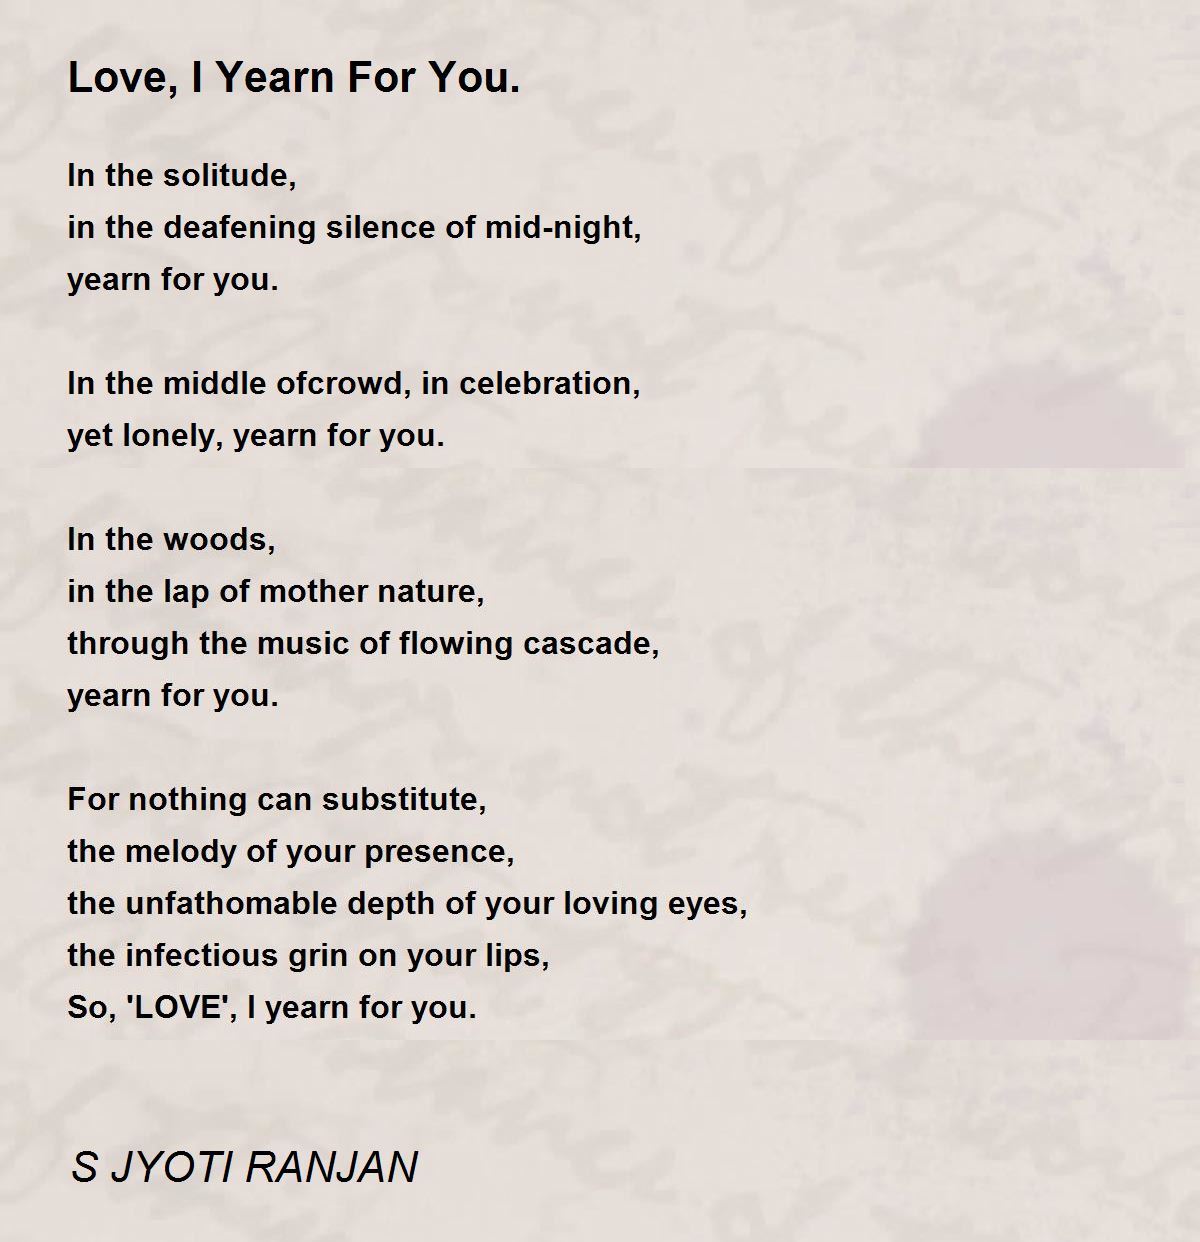 Love, I Yearn For You. - Love, I Yearn For You. Poem by S JYOTI RANJAN